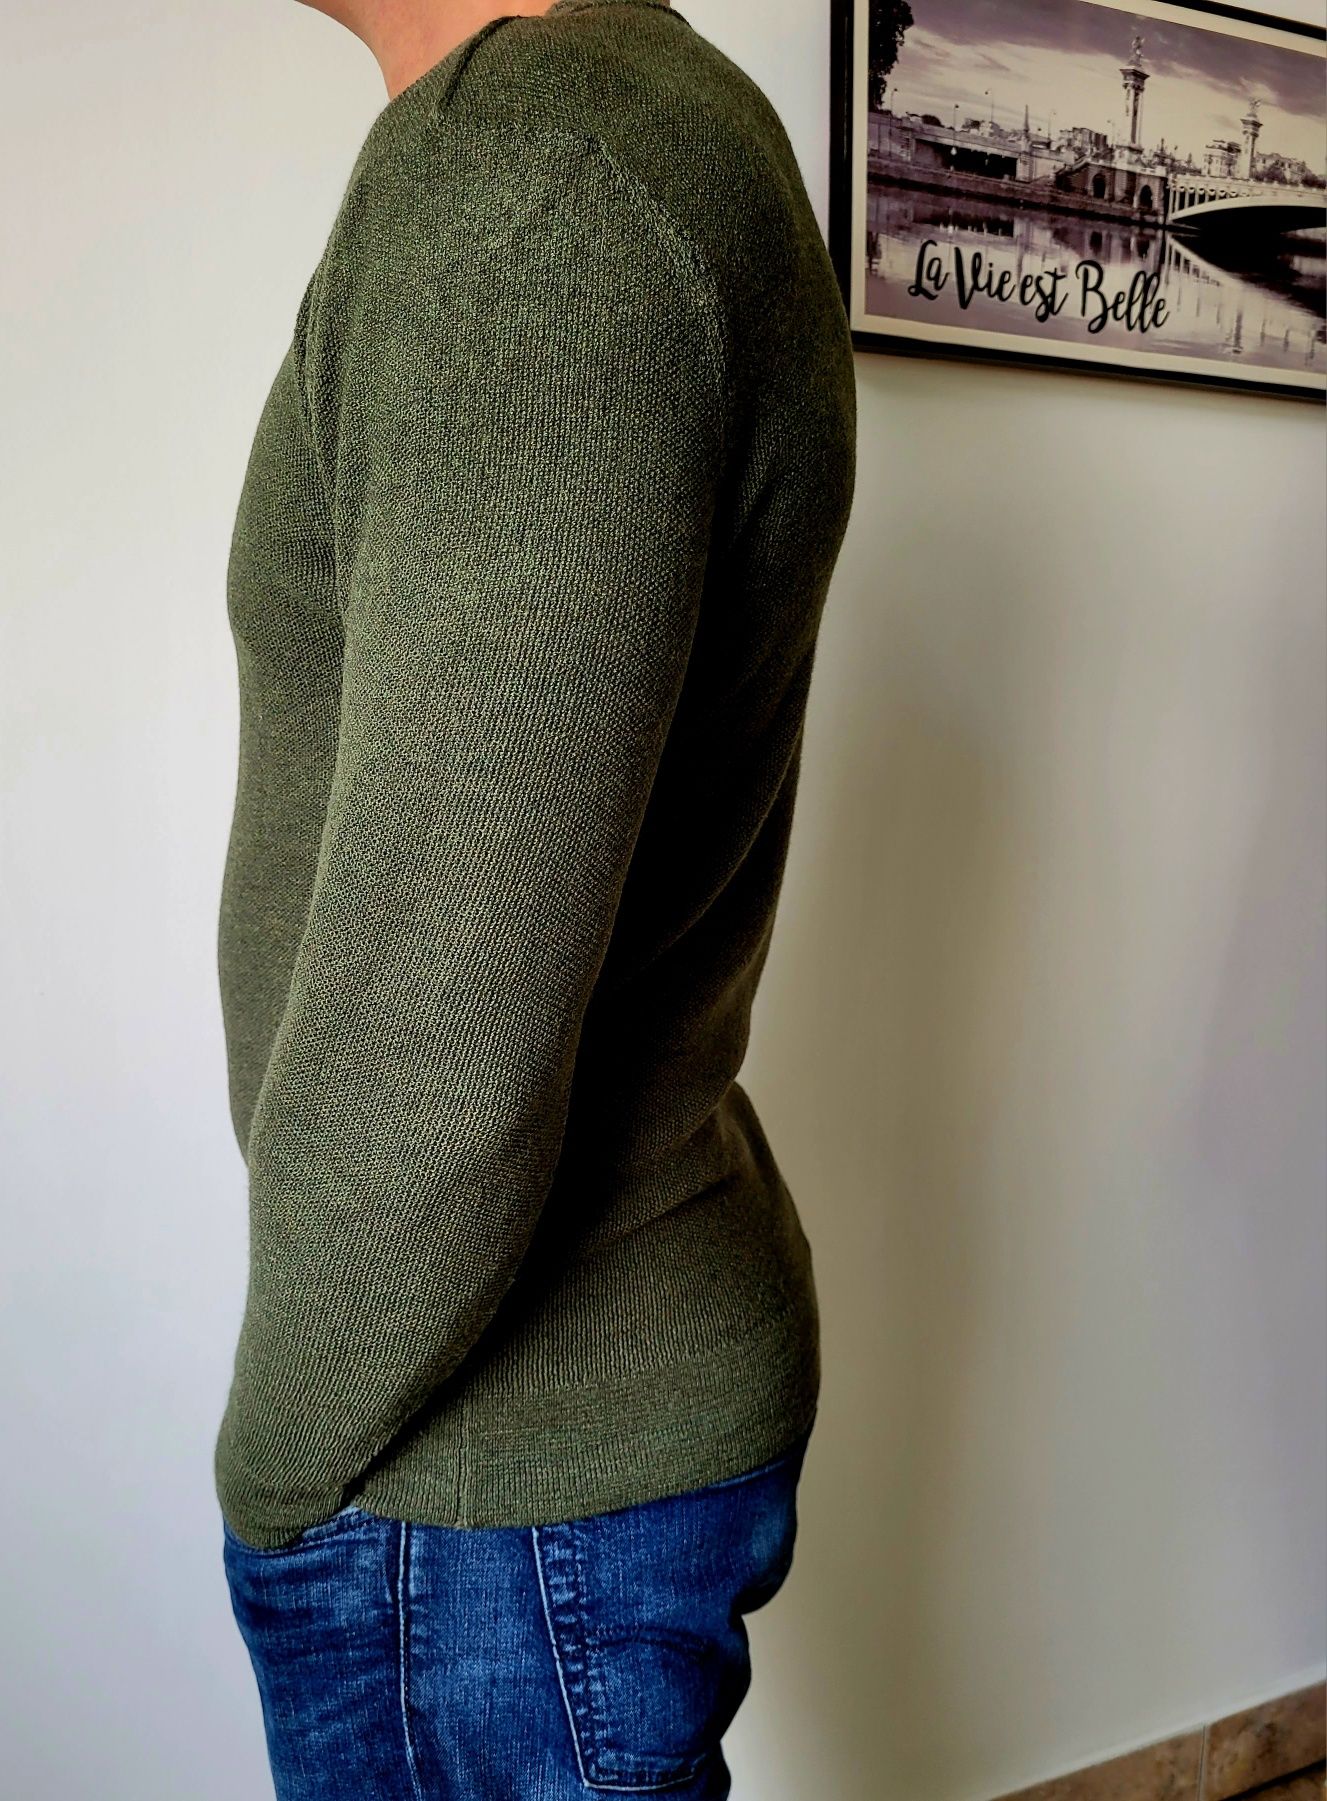 Blue de Genes sweter męski 100%merino
rozmiar:z metki XL